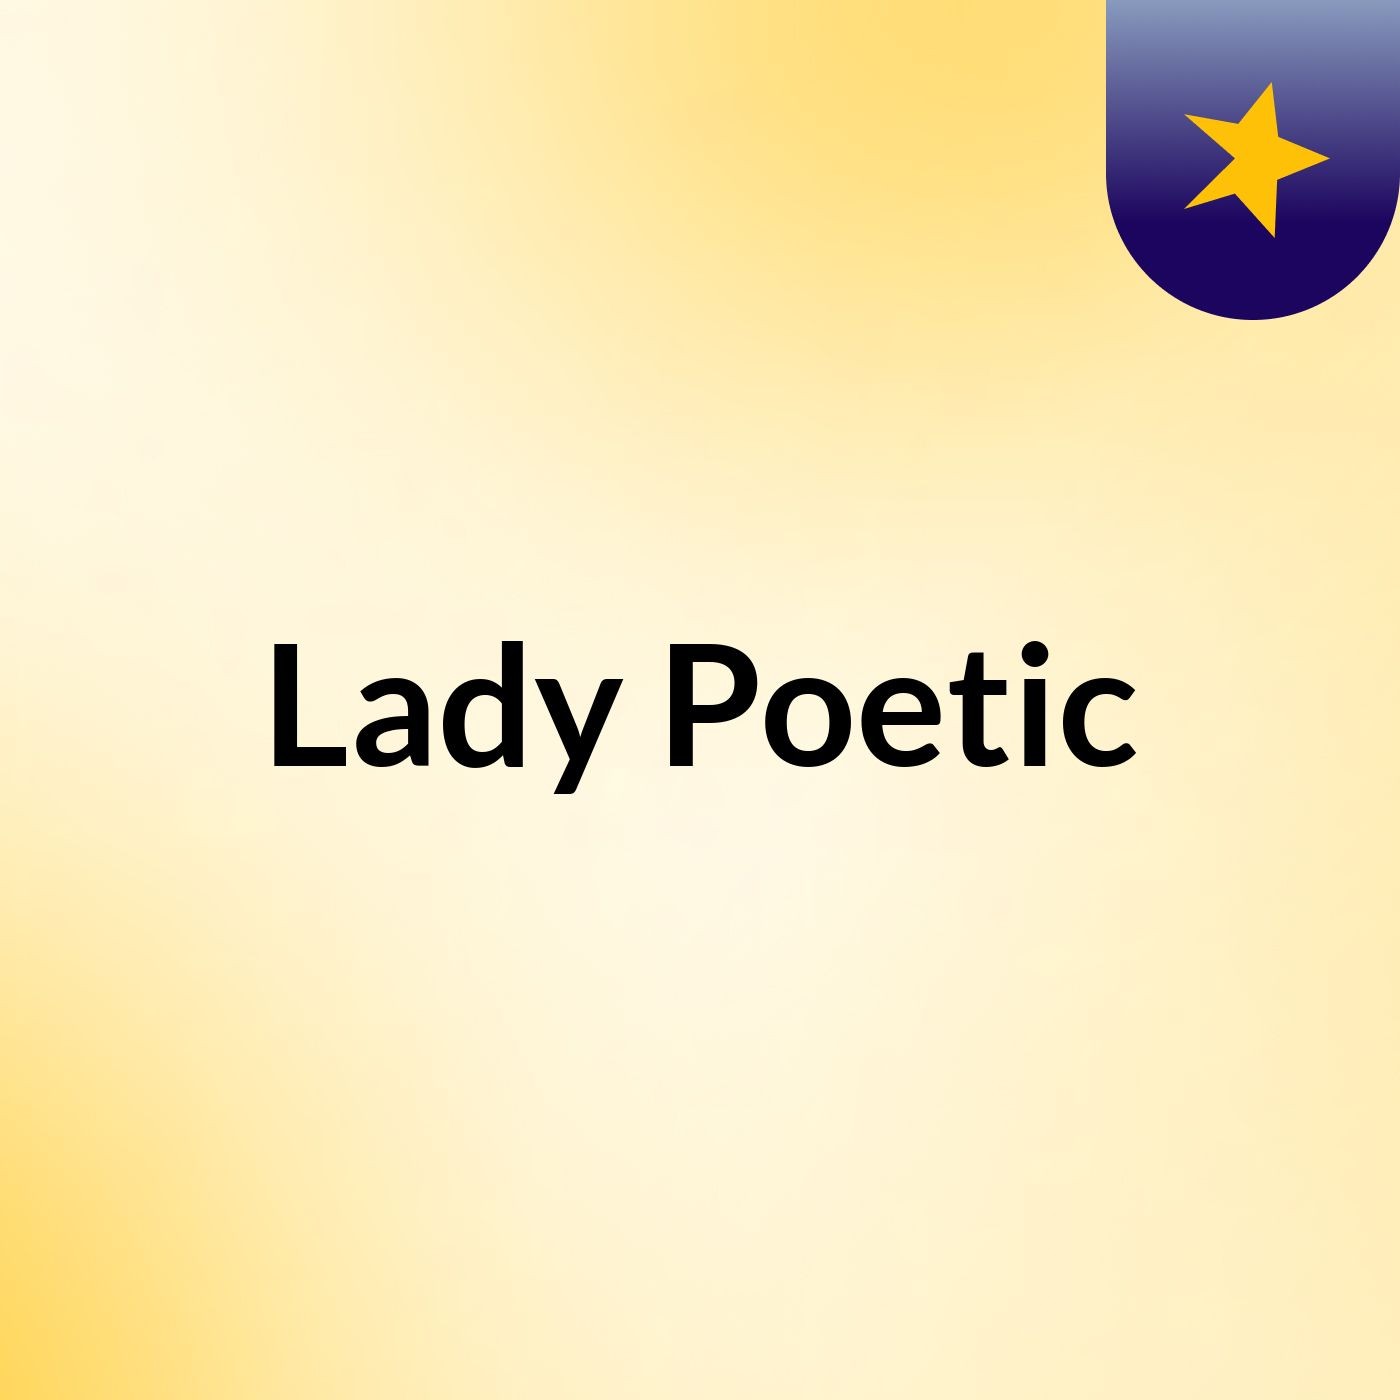 Lady Poetic